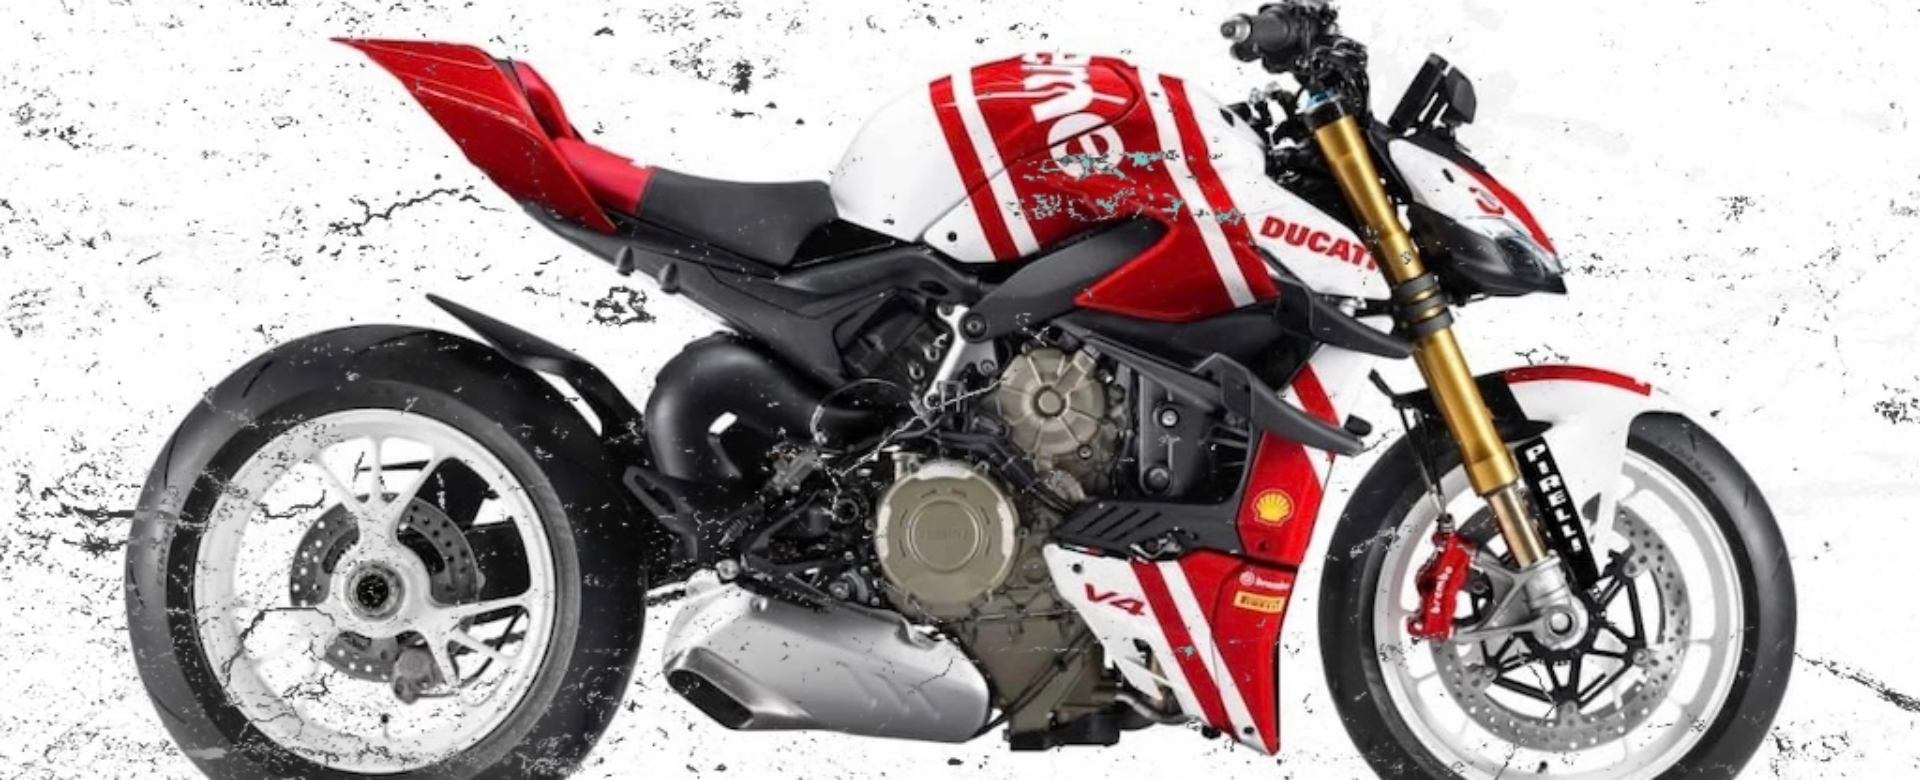 Modern Collectibles: Supreme x Ducati khuấy động đường đua với phiên bản mô tô độc đáo